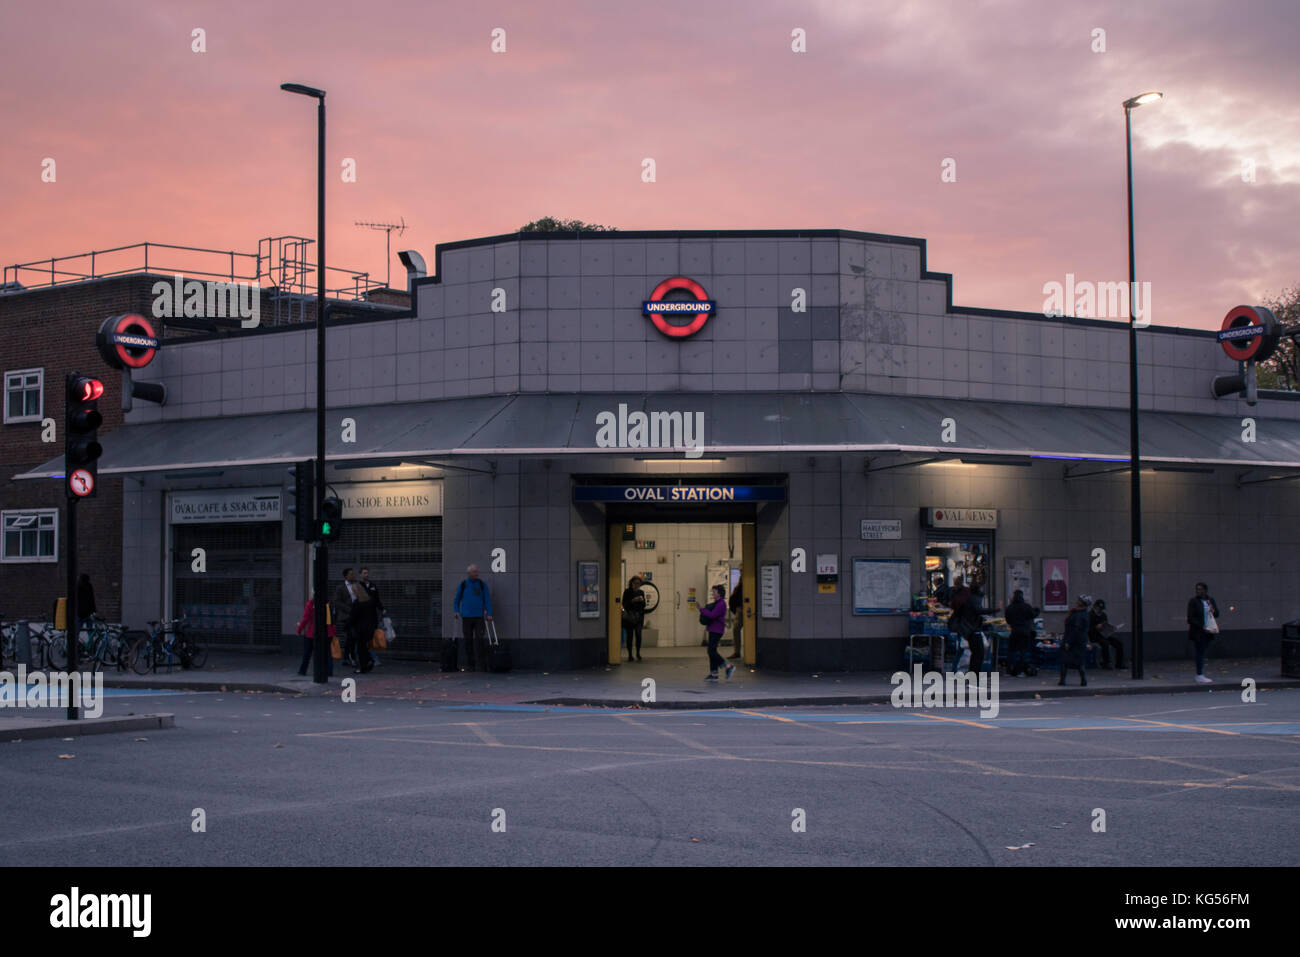 Stazione della metropolitana Oval in serata, Londra Foto Stock